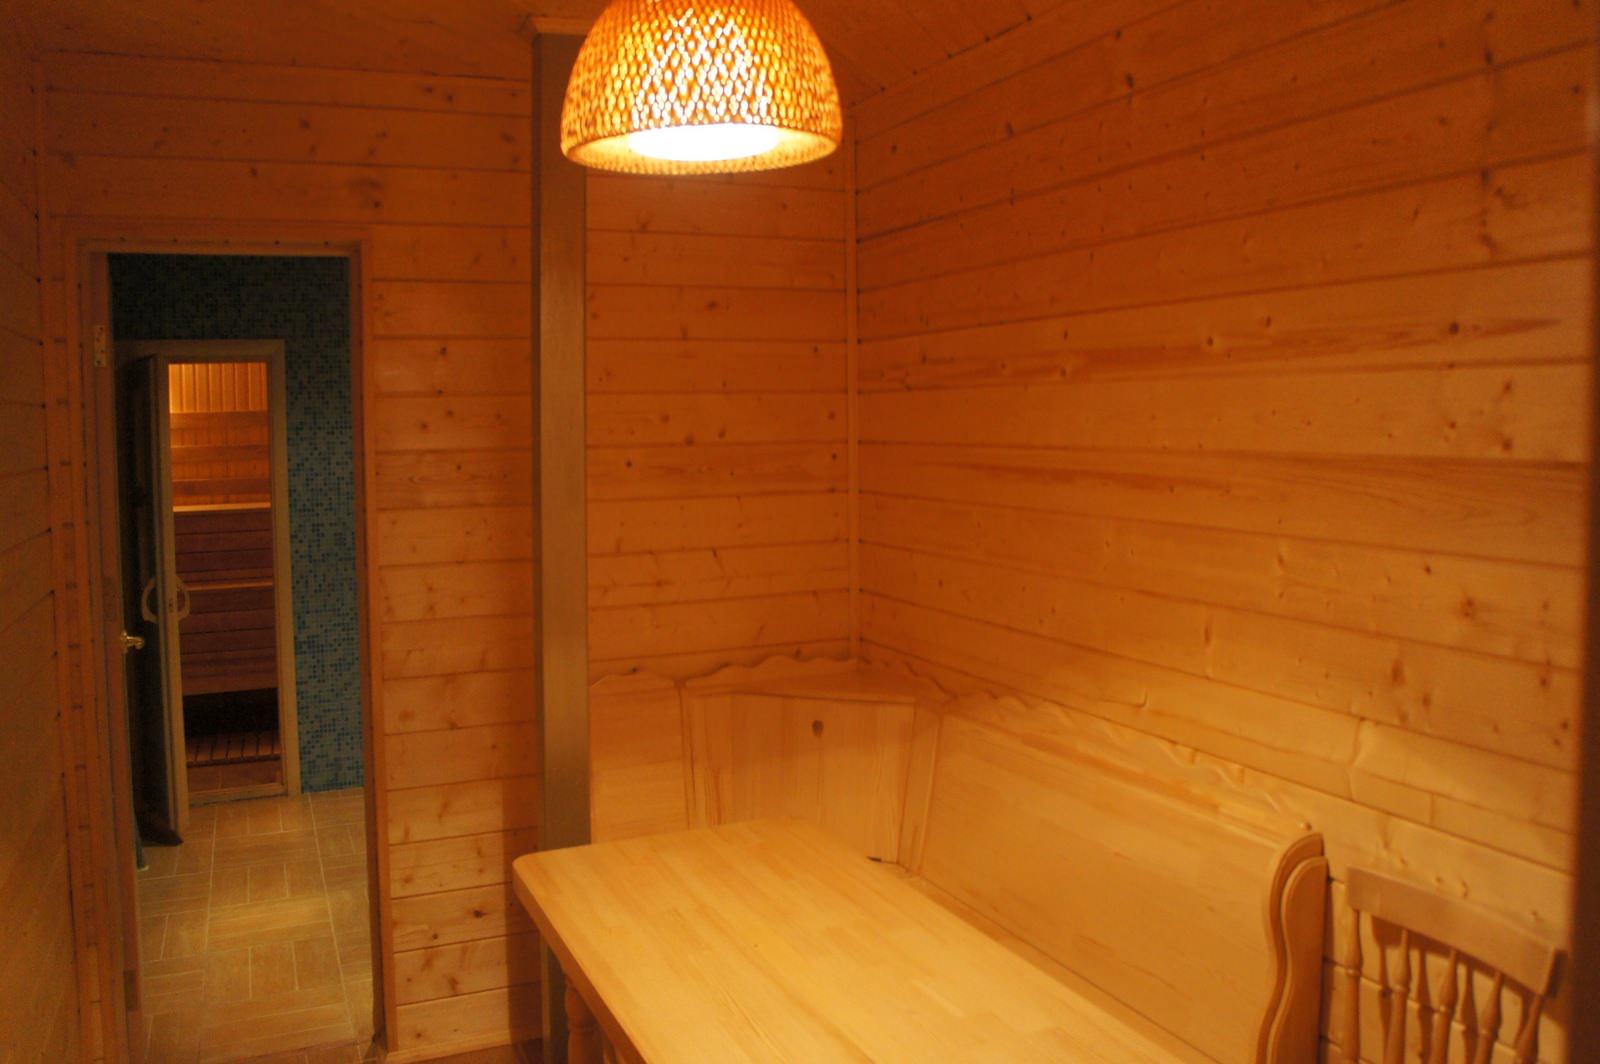 sauna 4